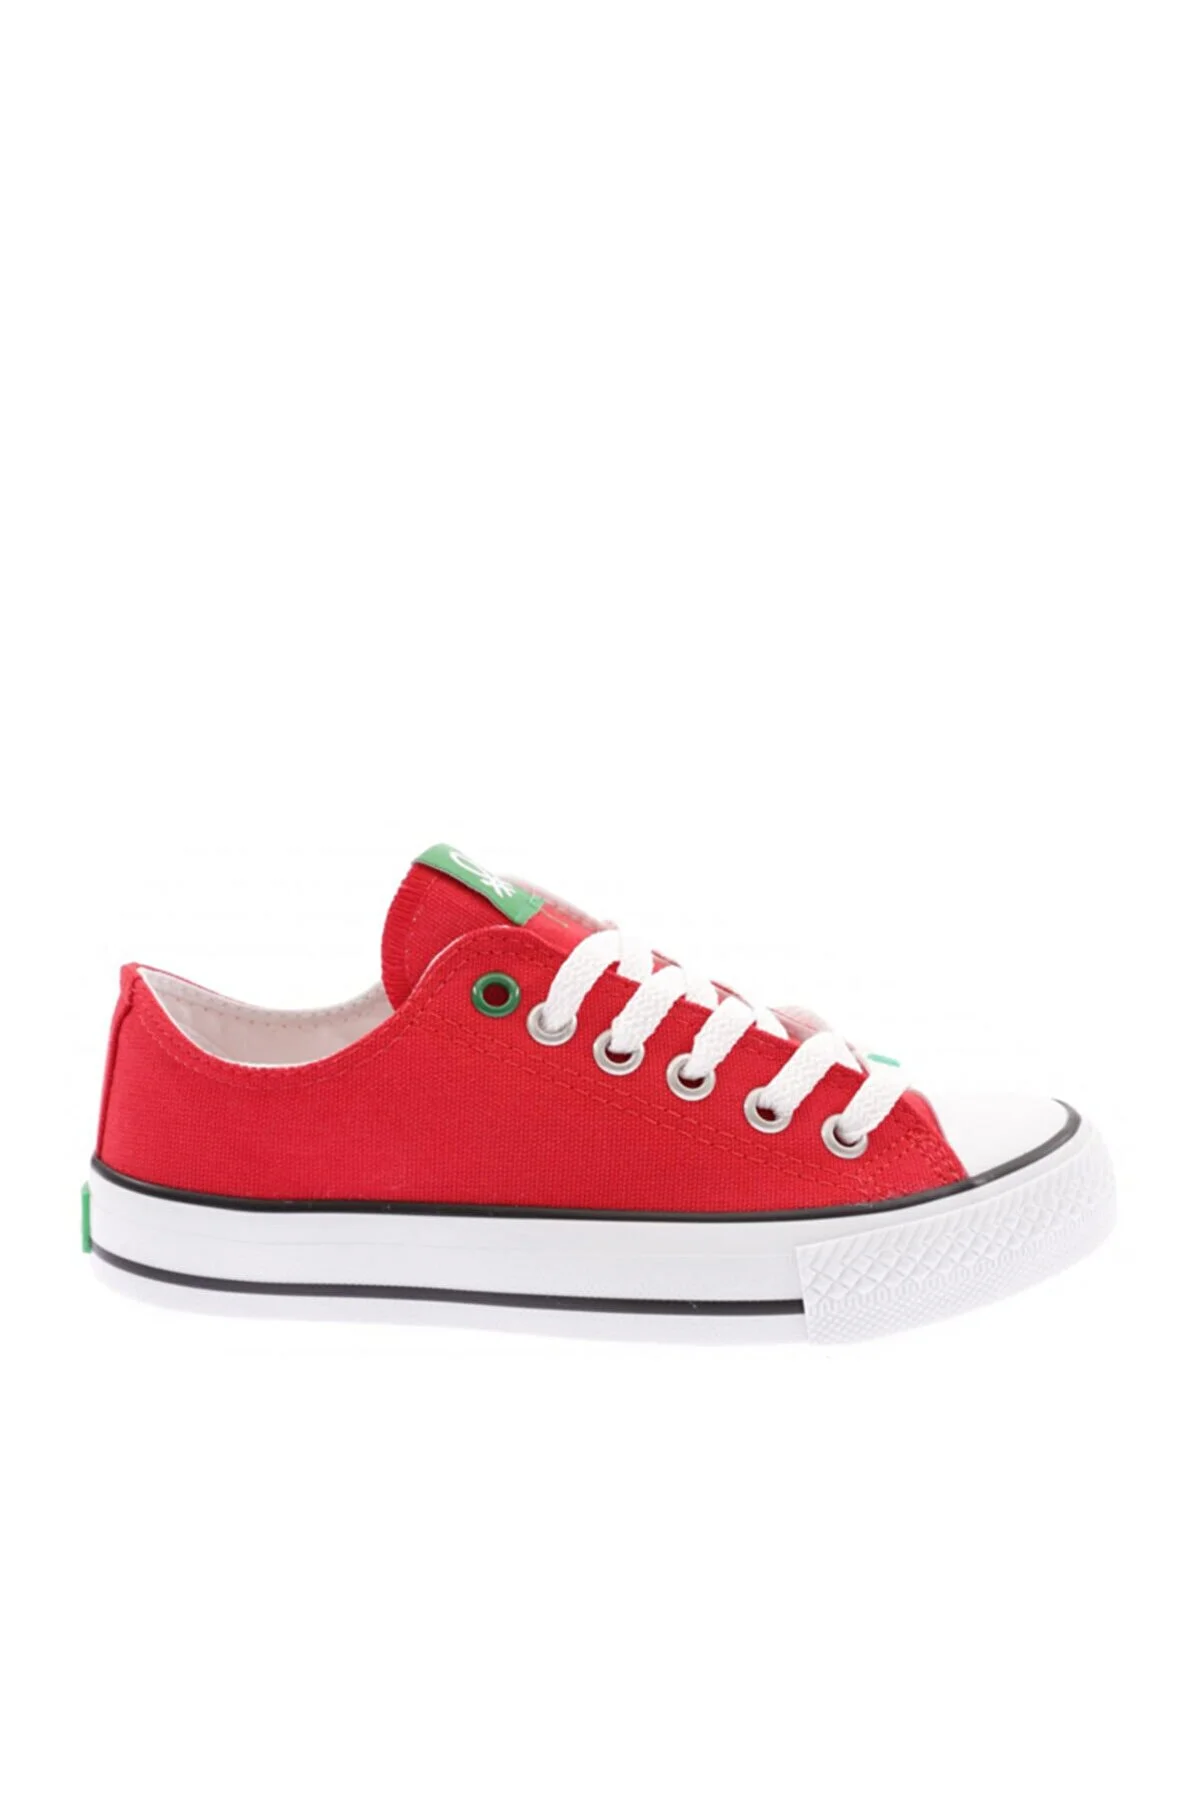 BENETTON - Kadın Spor ayakkabı-BN-30196-Kırmızı